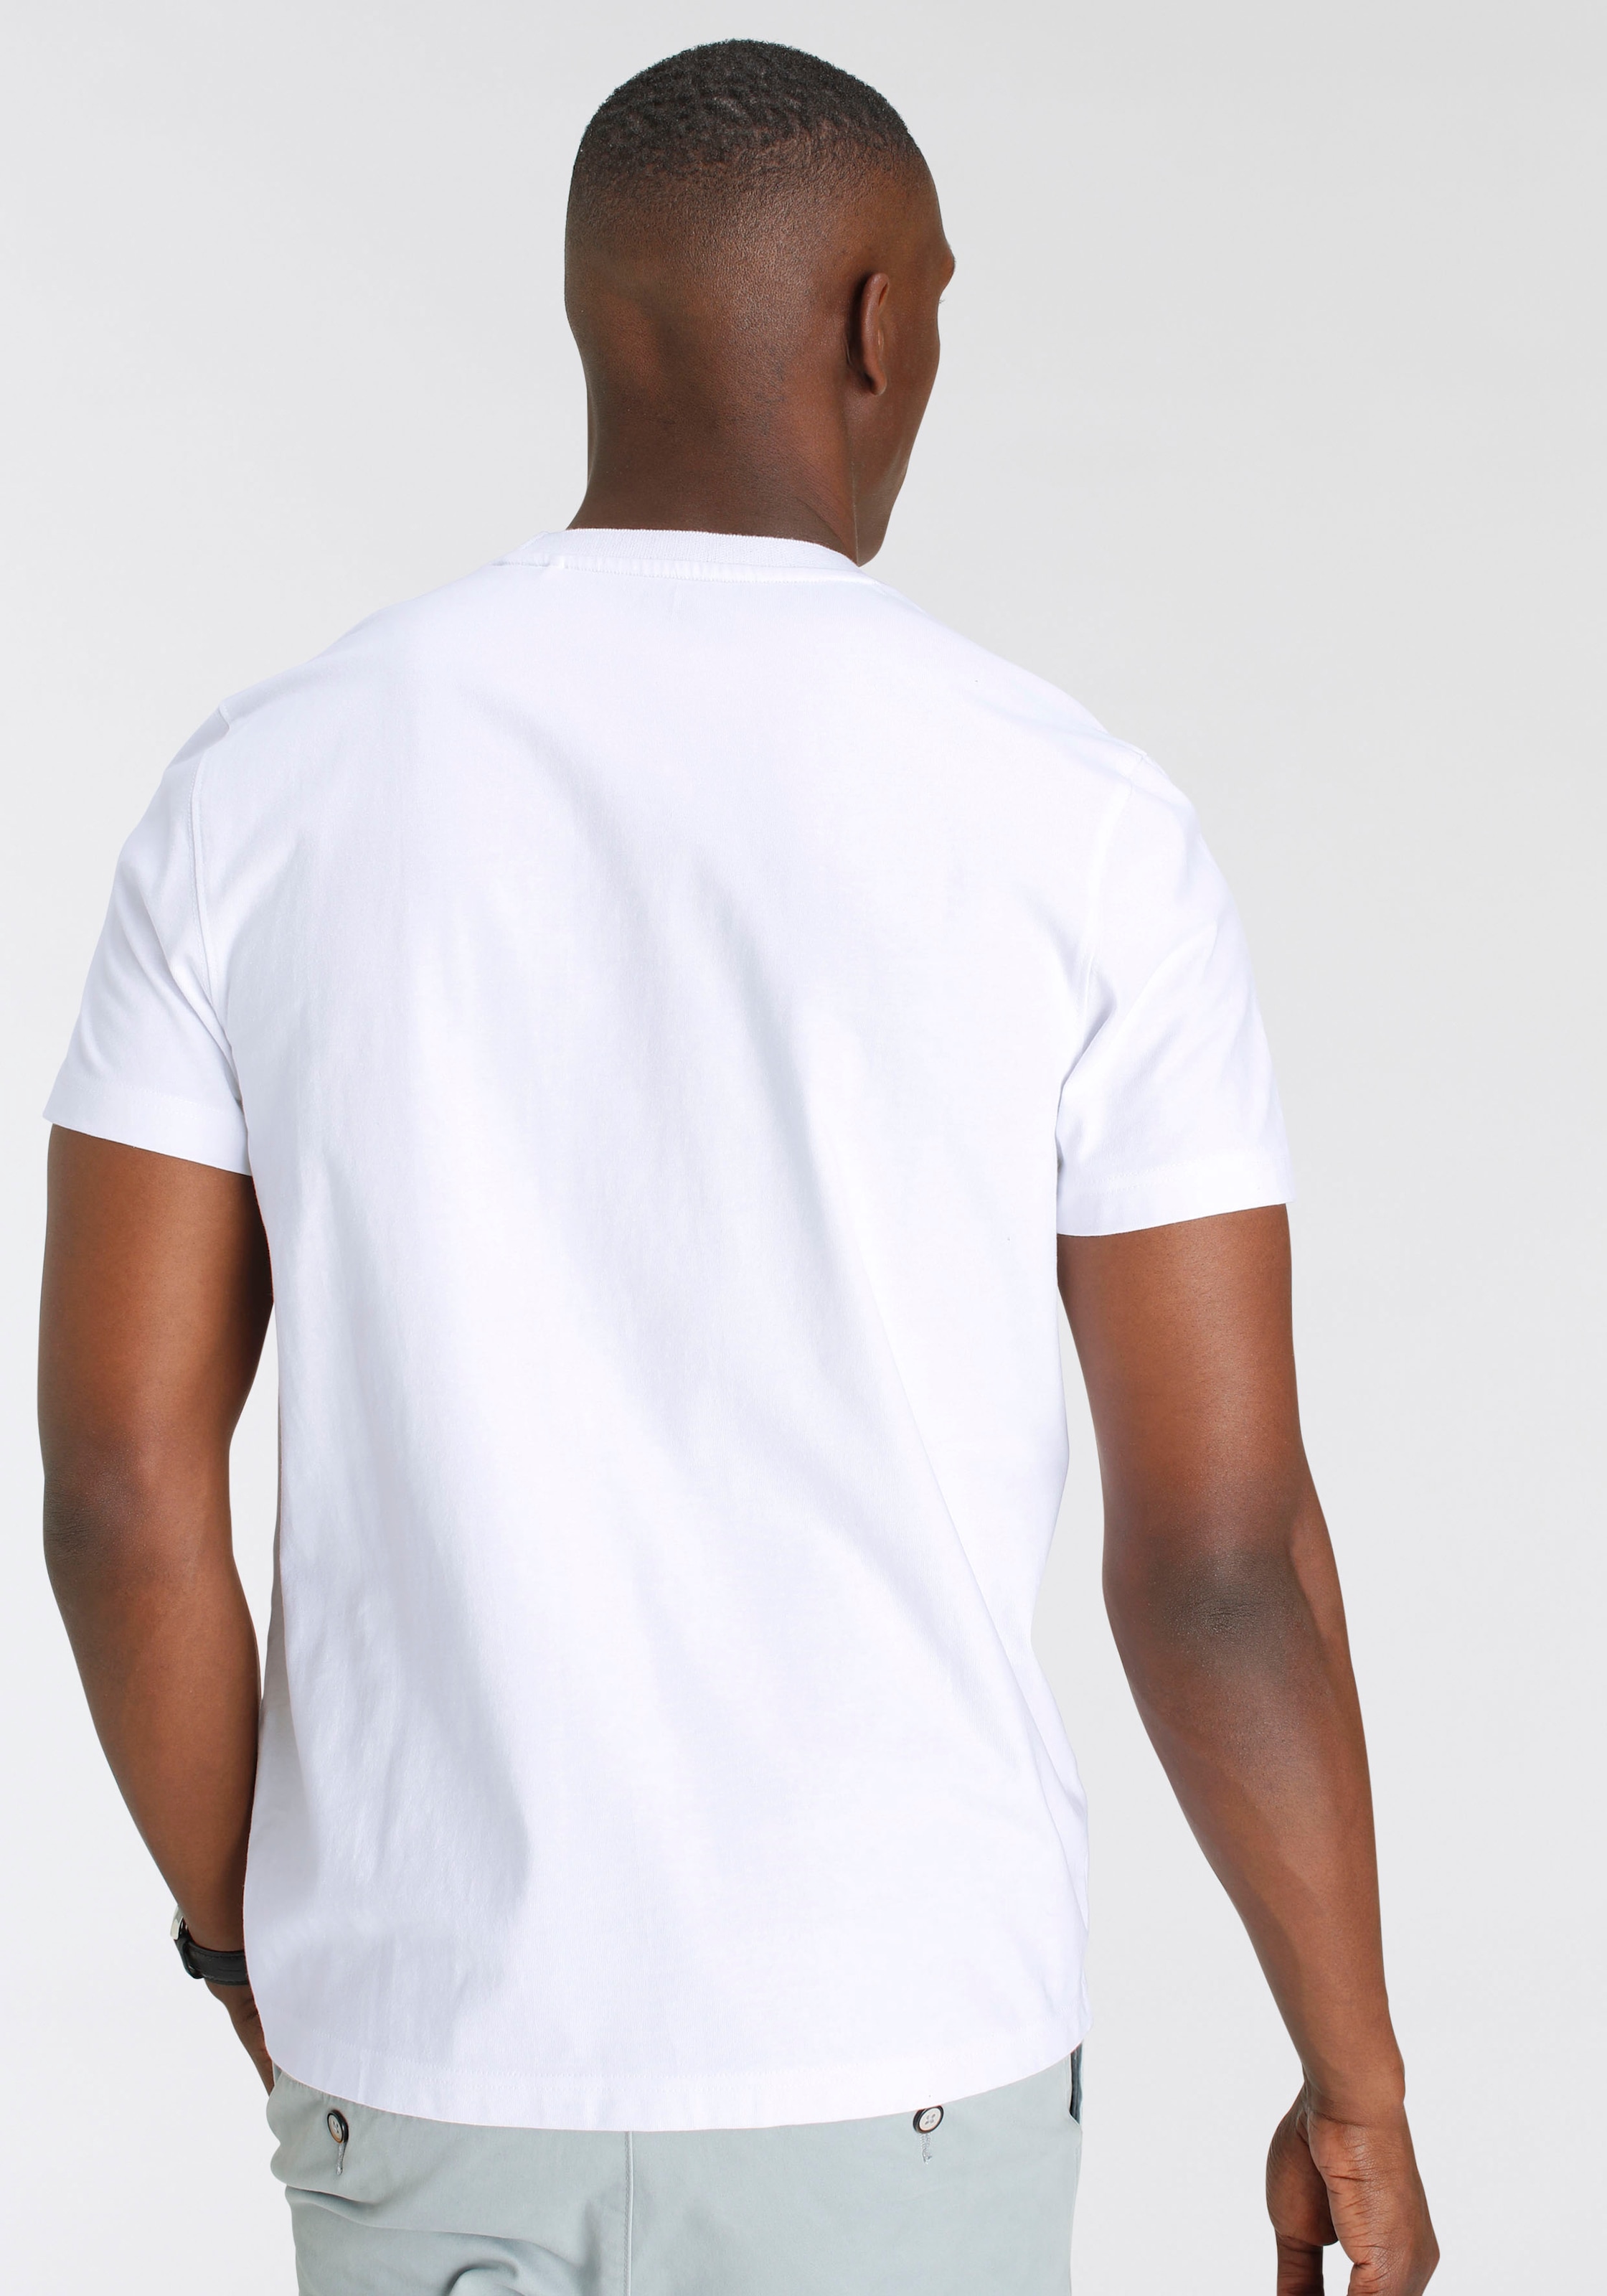 DELMAO T-Shirt, mit Brustprint und Schriftzug am Halsausschnitt-NEUE MARKE!